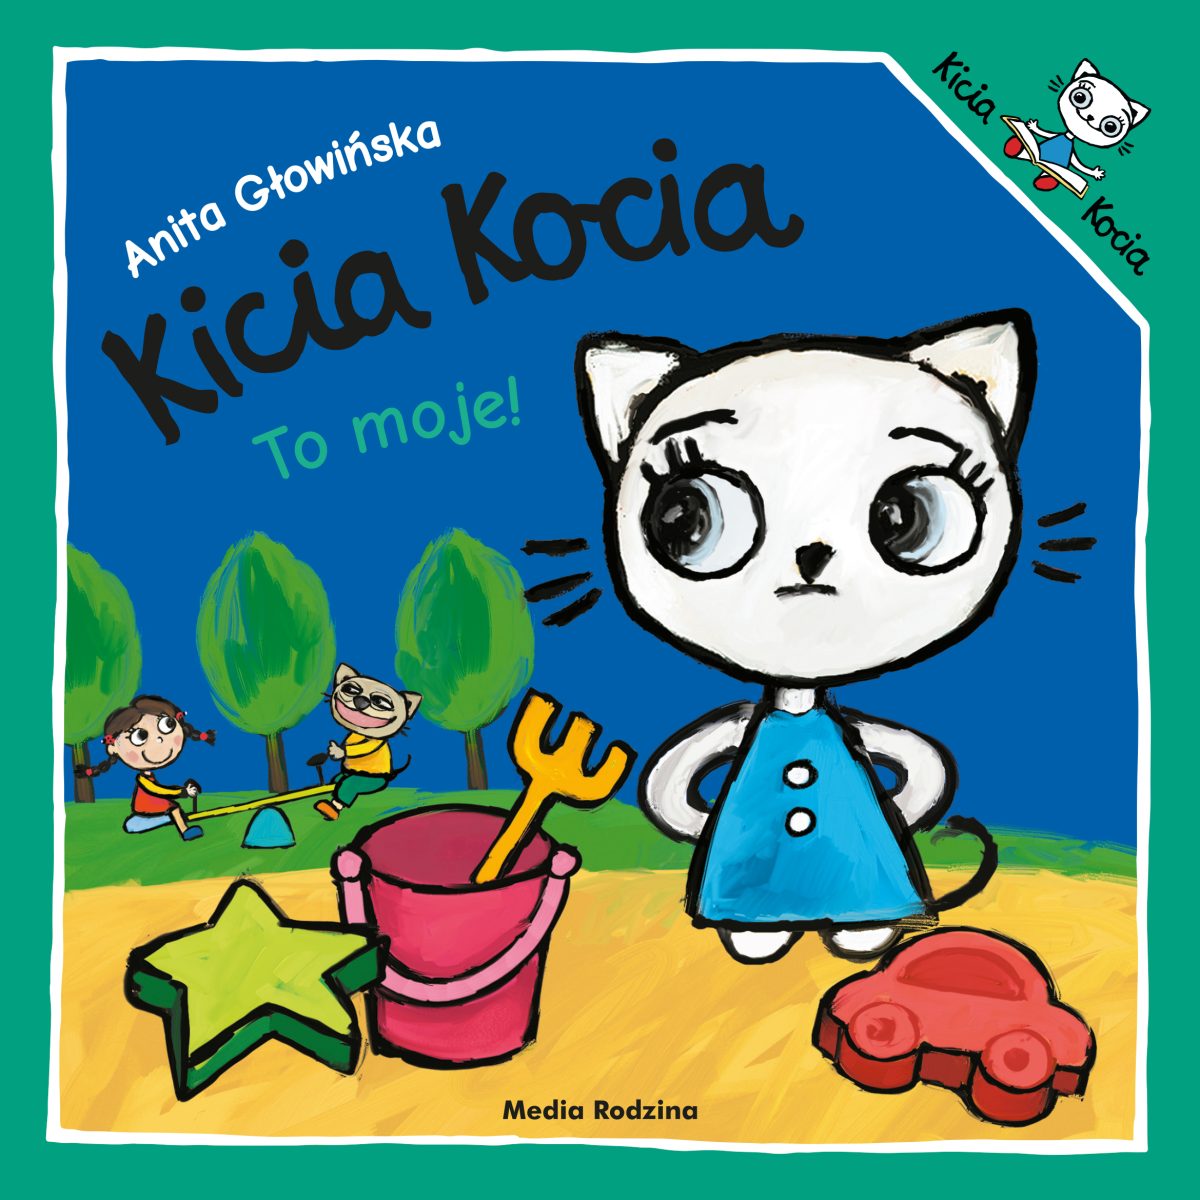 Książka Kicia Kocia To moje od wydawnictwa Media Rodzina